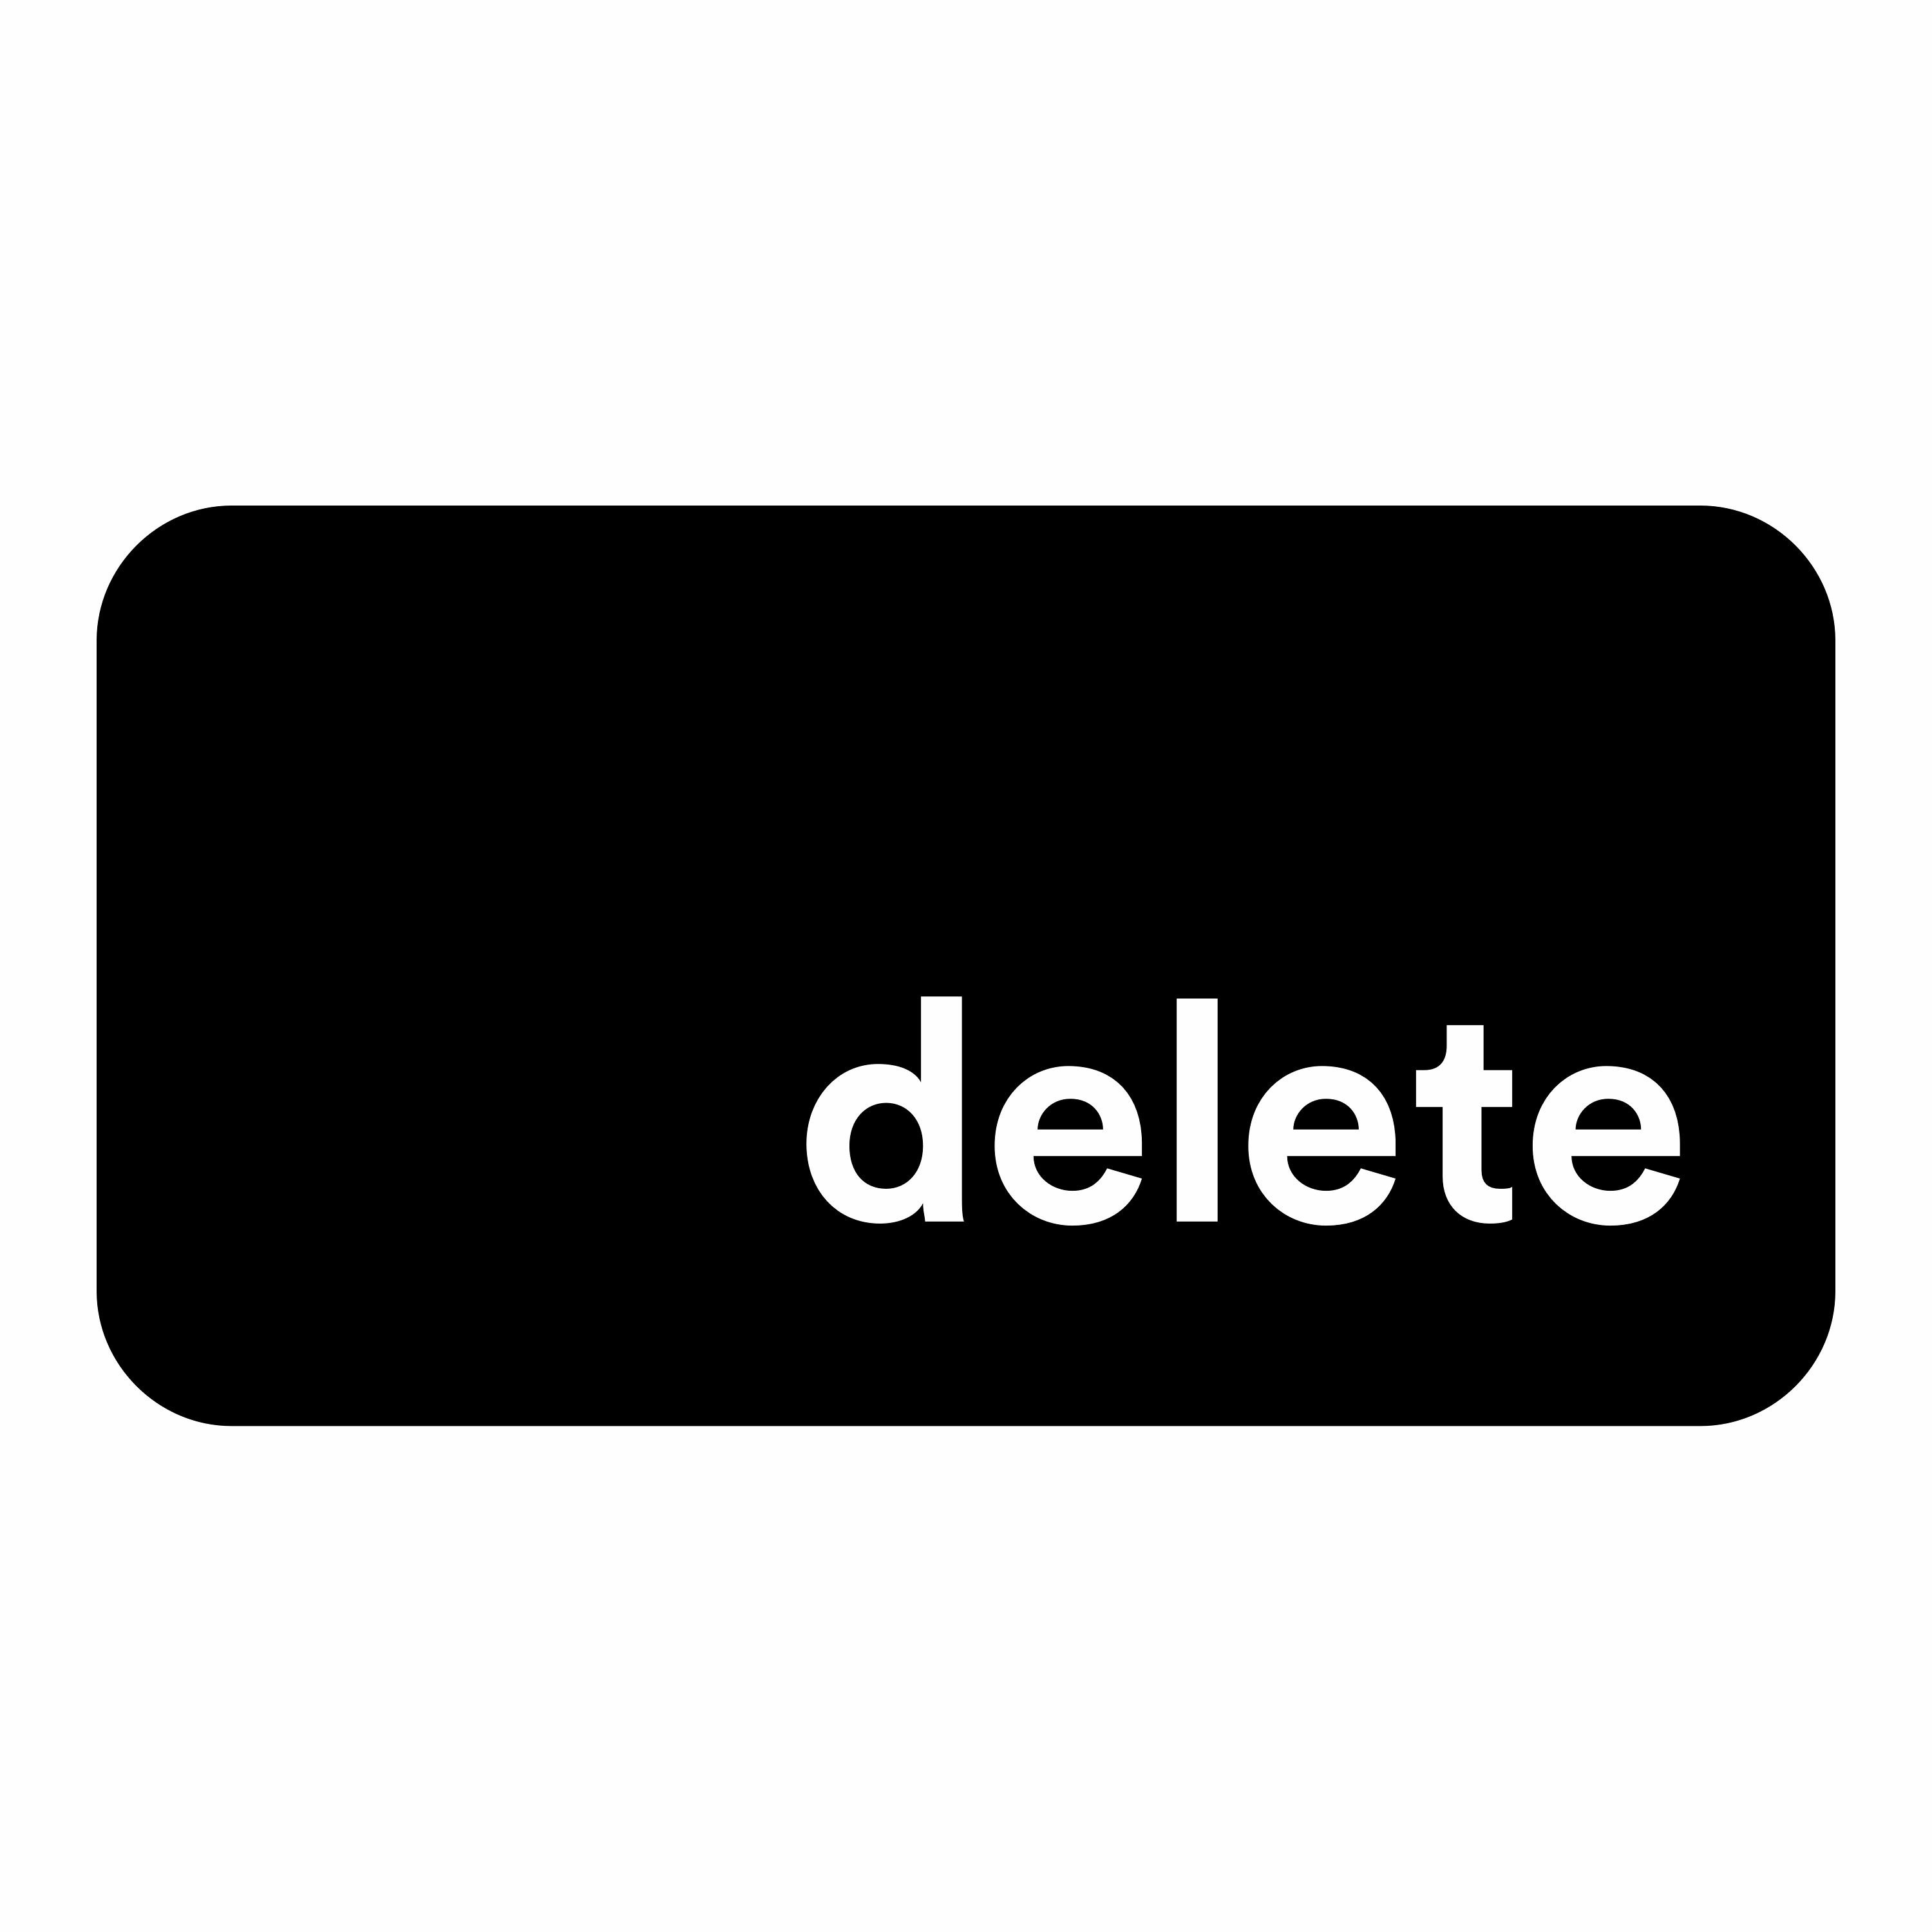 Словом delete